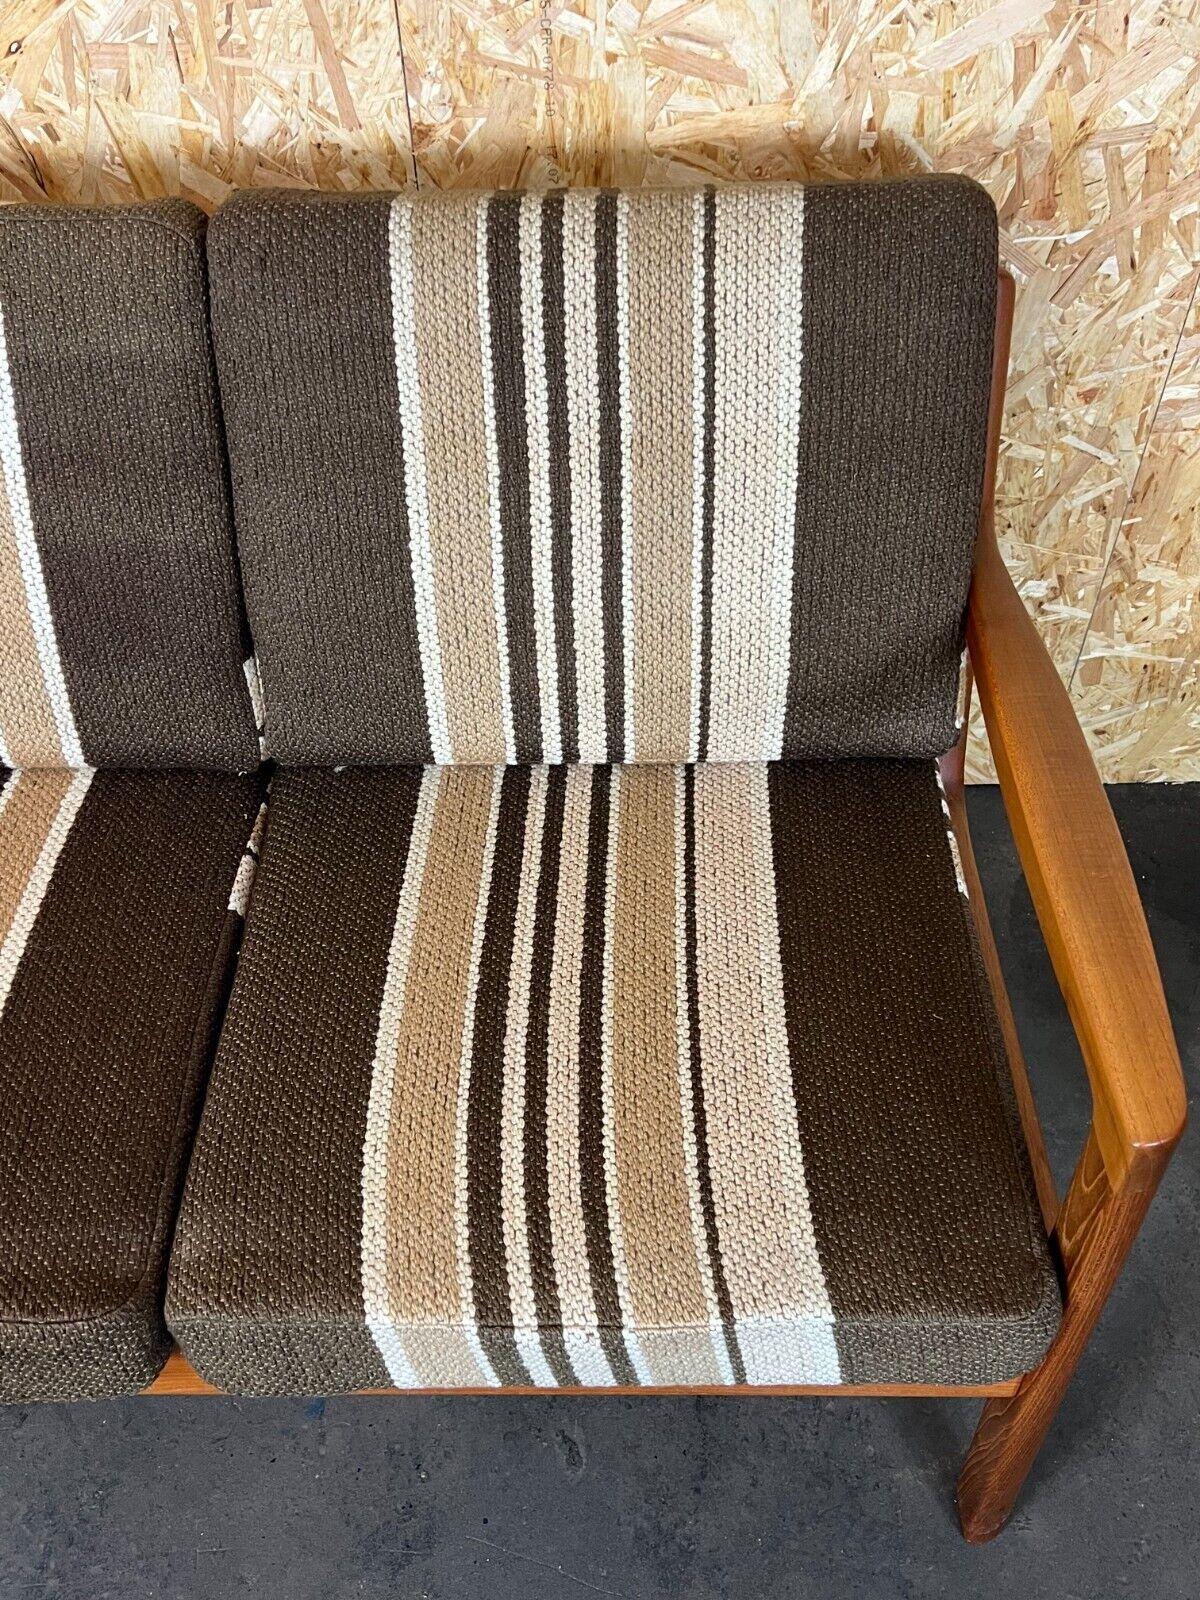 Fin du 20e siècle Canapé 3 Seater Couch Ole Wanscher Cado France & Son Design danois, années 60 70 en vente